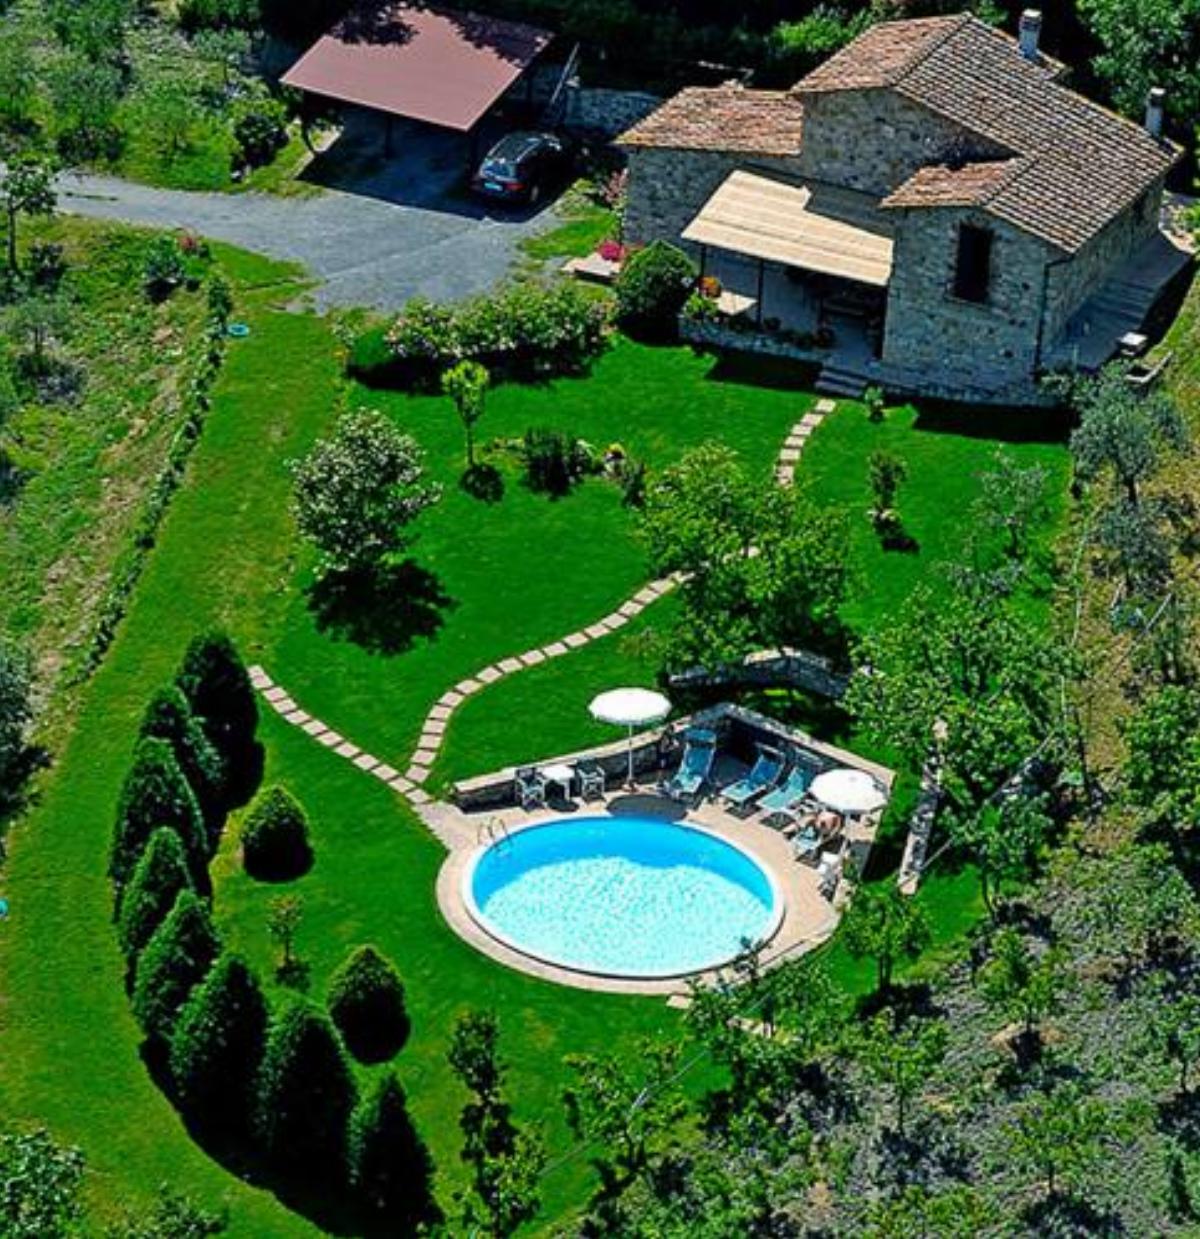 Villa esclusiva in Toscana con piscina privata